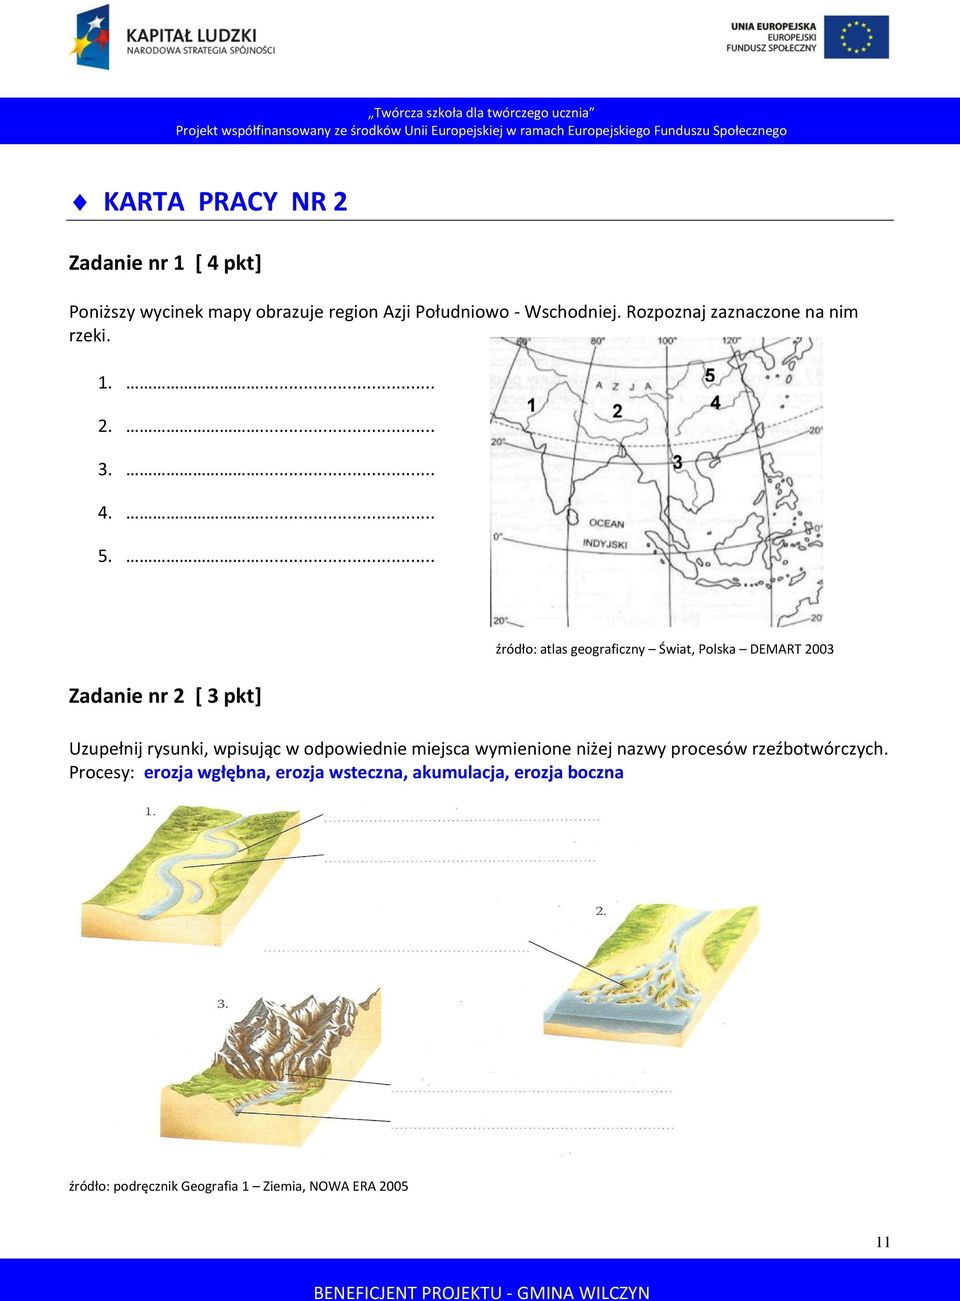 ... Zadanie nr 2 [ 3 pkt] źródło: atlas geograficzny Świat, Polska DEMART 2003 Uzupełnij rysunki, wpisując w